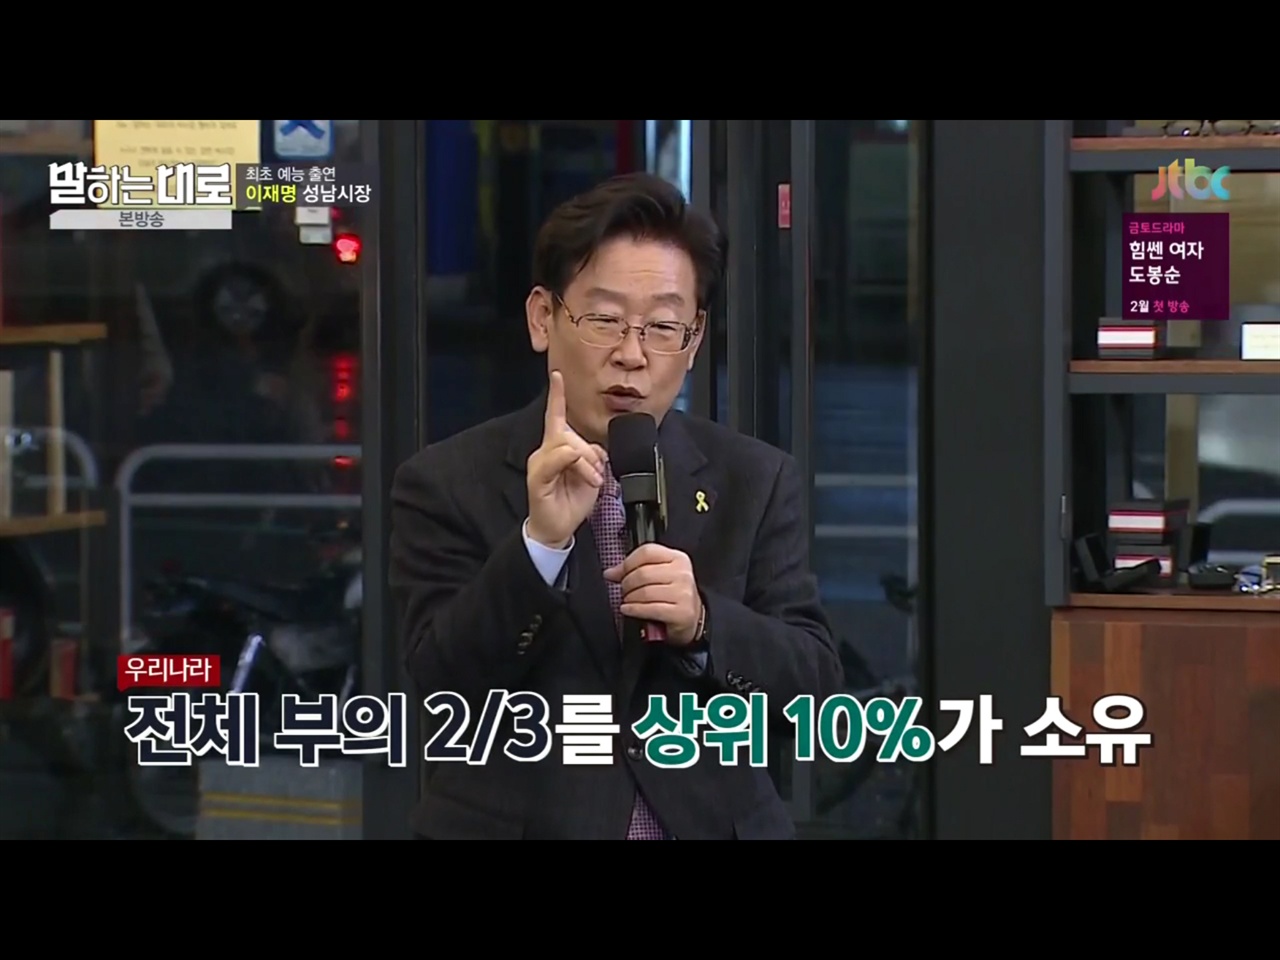  "전체 부의 2/3를 상위 10%가 소유" 이재명 성남시장의 최초 예능 출연은 JTBC <말하는 대로>였다. 